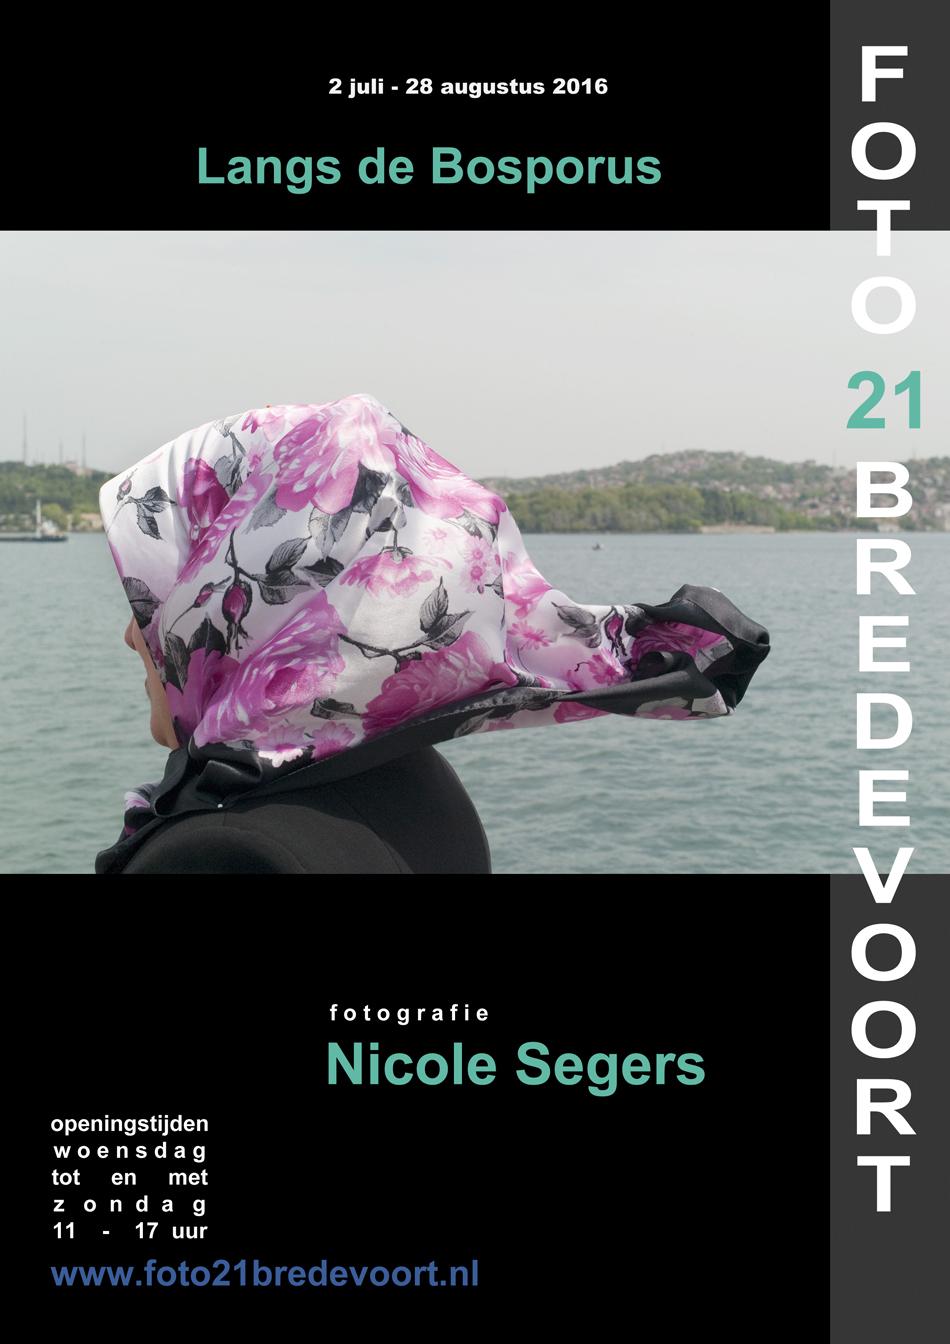 Grote zaal 2 juli - 28 augustus 2016 Langs de Bosporus Fotograaf Nicole Segers Fotografe Nicole Segers verbleef een jaar lang aan de oevers van de Bosporus, het grensgebied tussen Europa en Azië dat